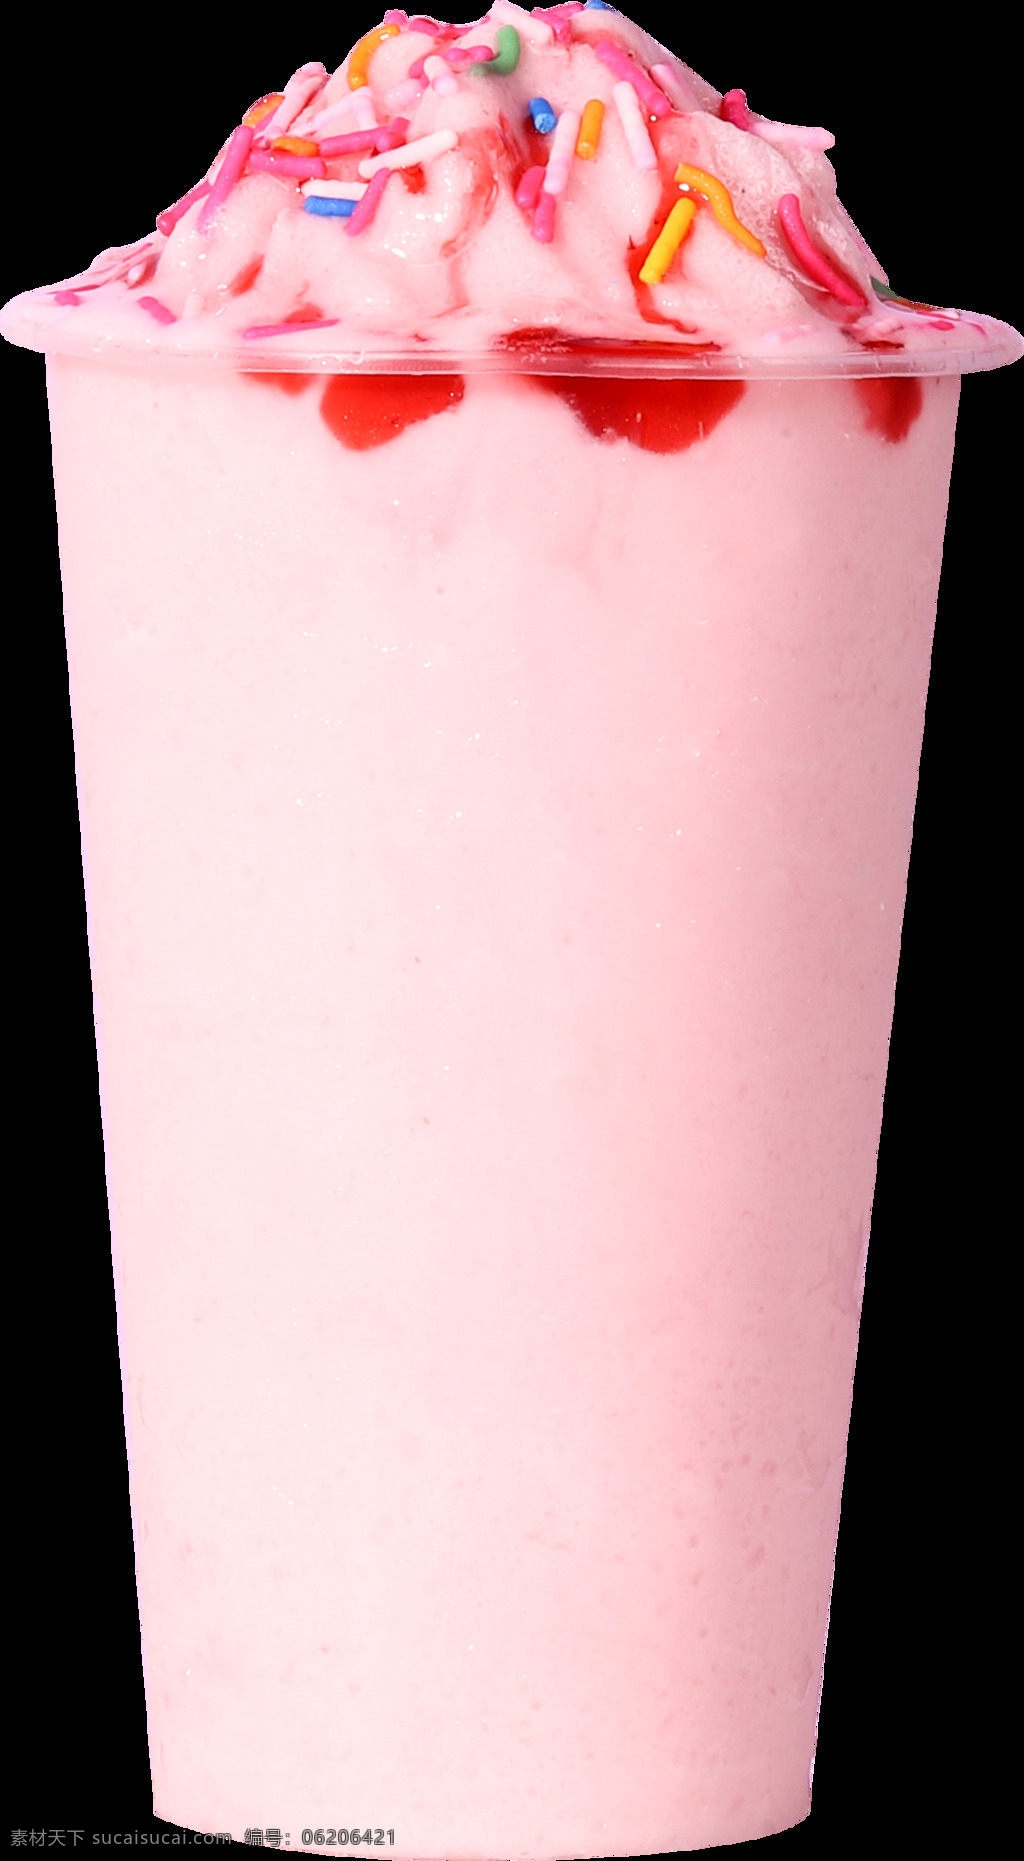 草莓冰沙图片 奶茶 饮品 夏季饮品 草莓 冰沙 雪冰 草莓冰沙